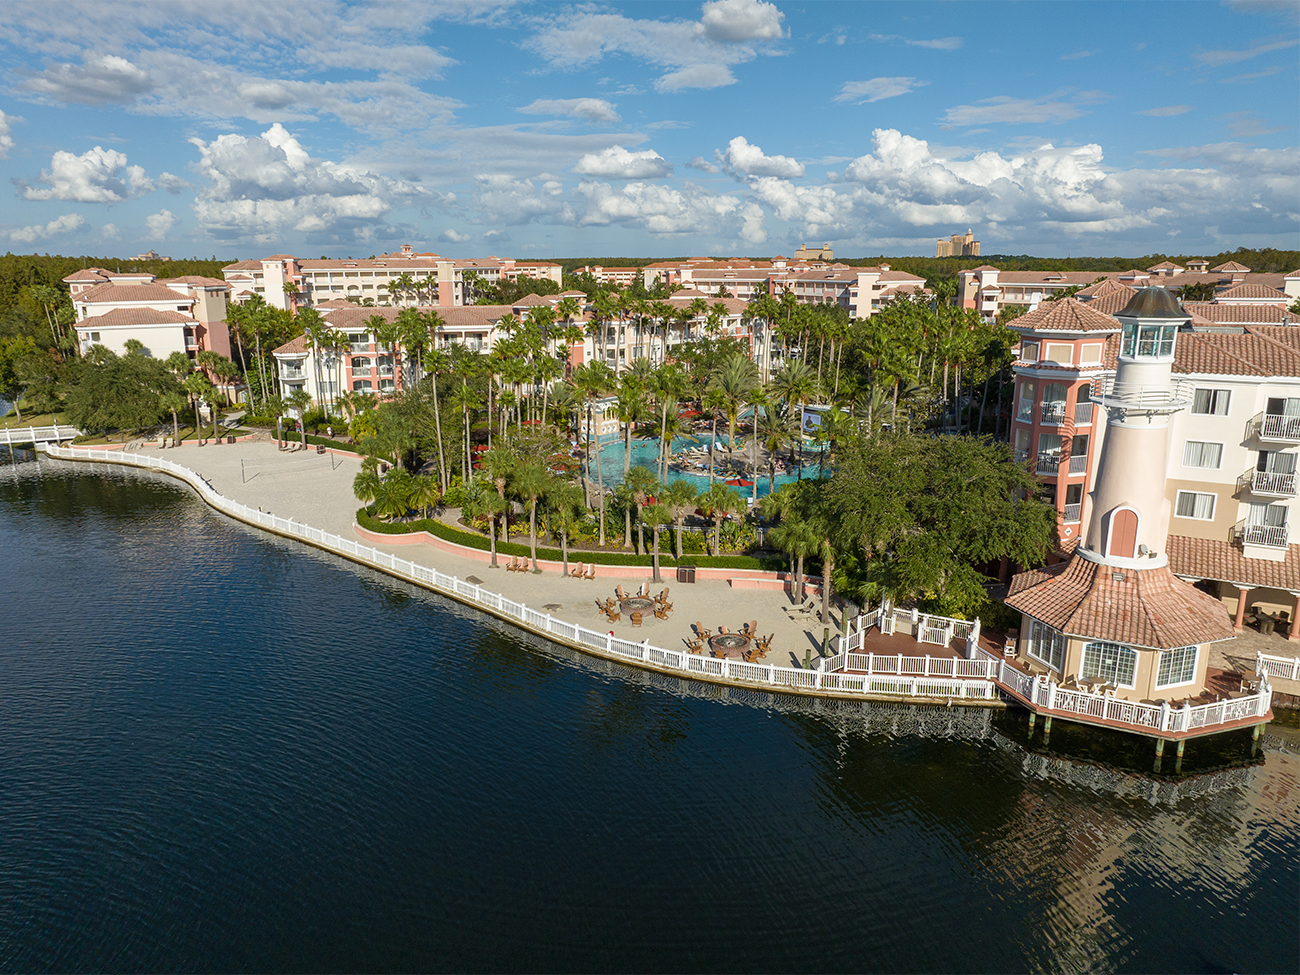 Image of Marriott's Grande Vista in Orlando.